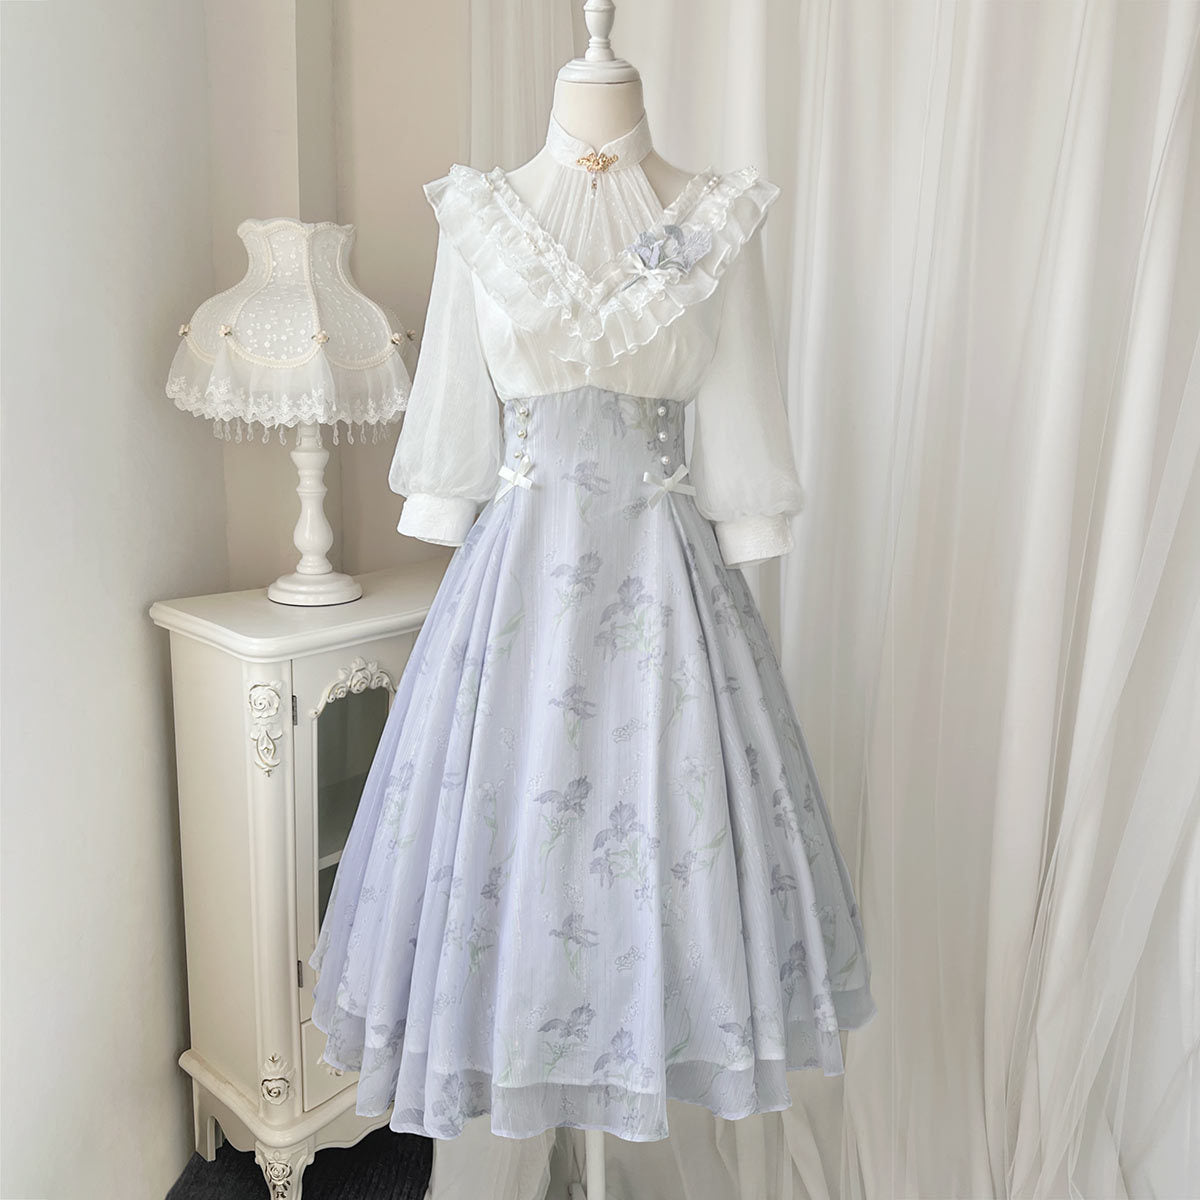 Cornfield Lolita~Iris Dream~Elegant Lolita Dress Short Sleeve OP dress S 